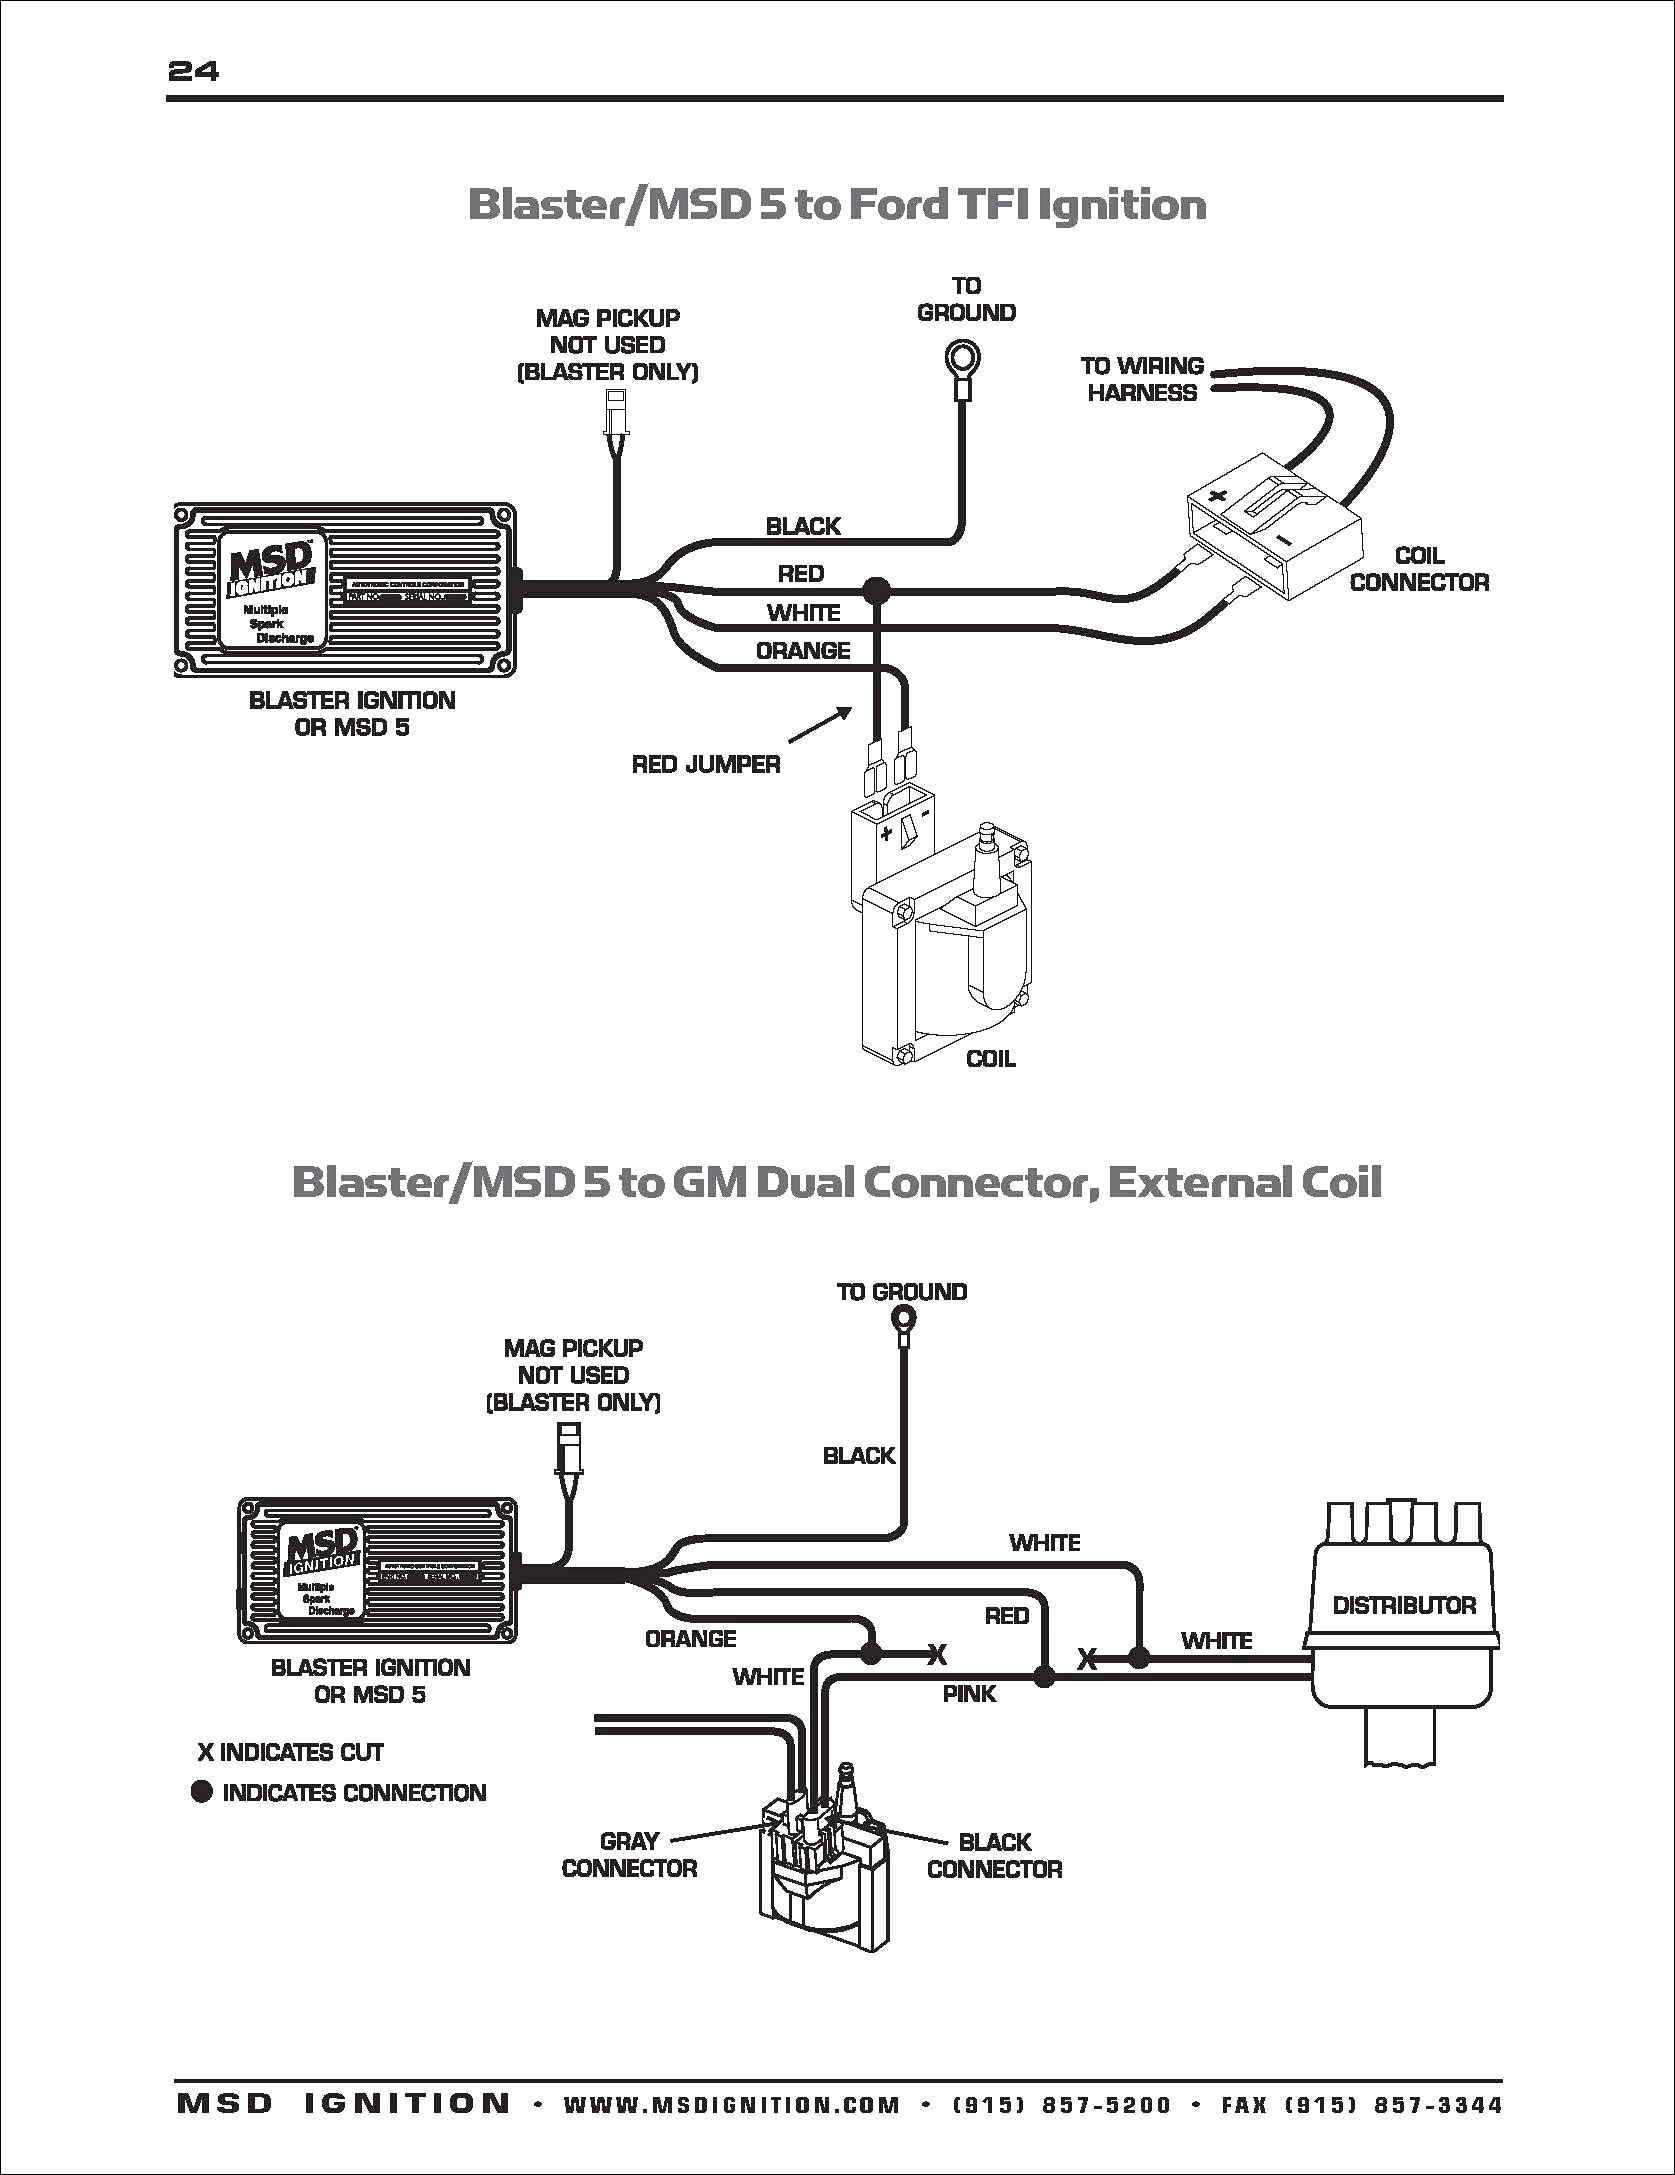 msd 5 wiring diagram motherwill msd 5 wiring diagram msd 5 wiring diagram